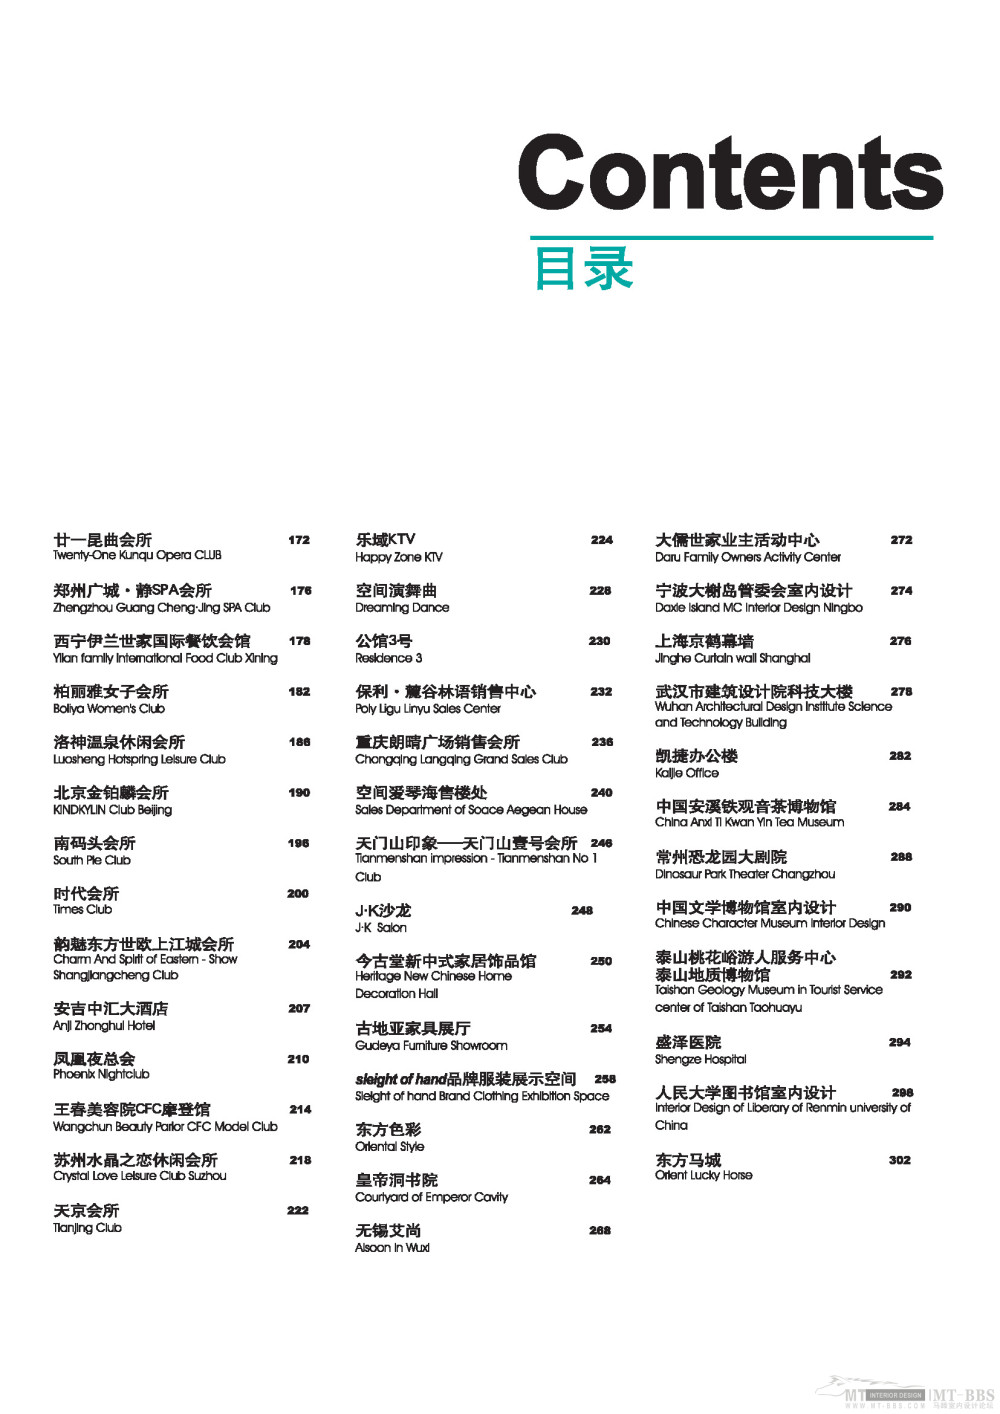 中国室内设计大奖赛优秀作品集 商业空间 (以上传完)_Print_页面_009.jpg